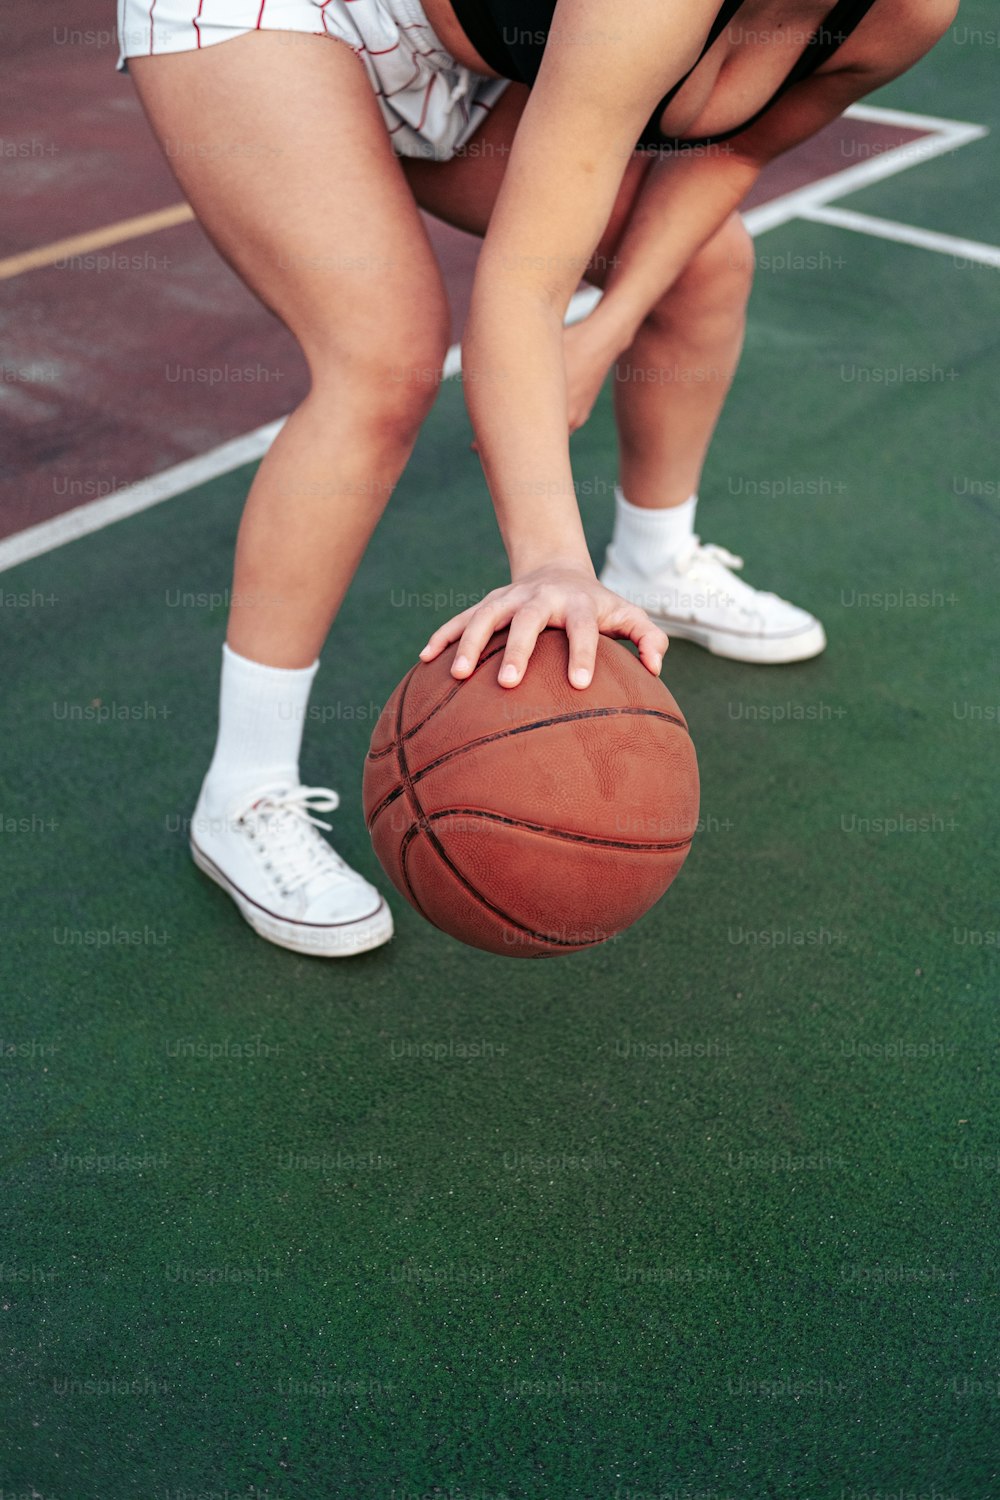 Une femme se penche pour ramasser un ballon de basket